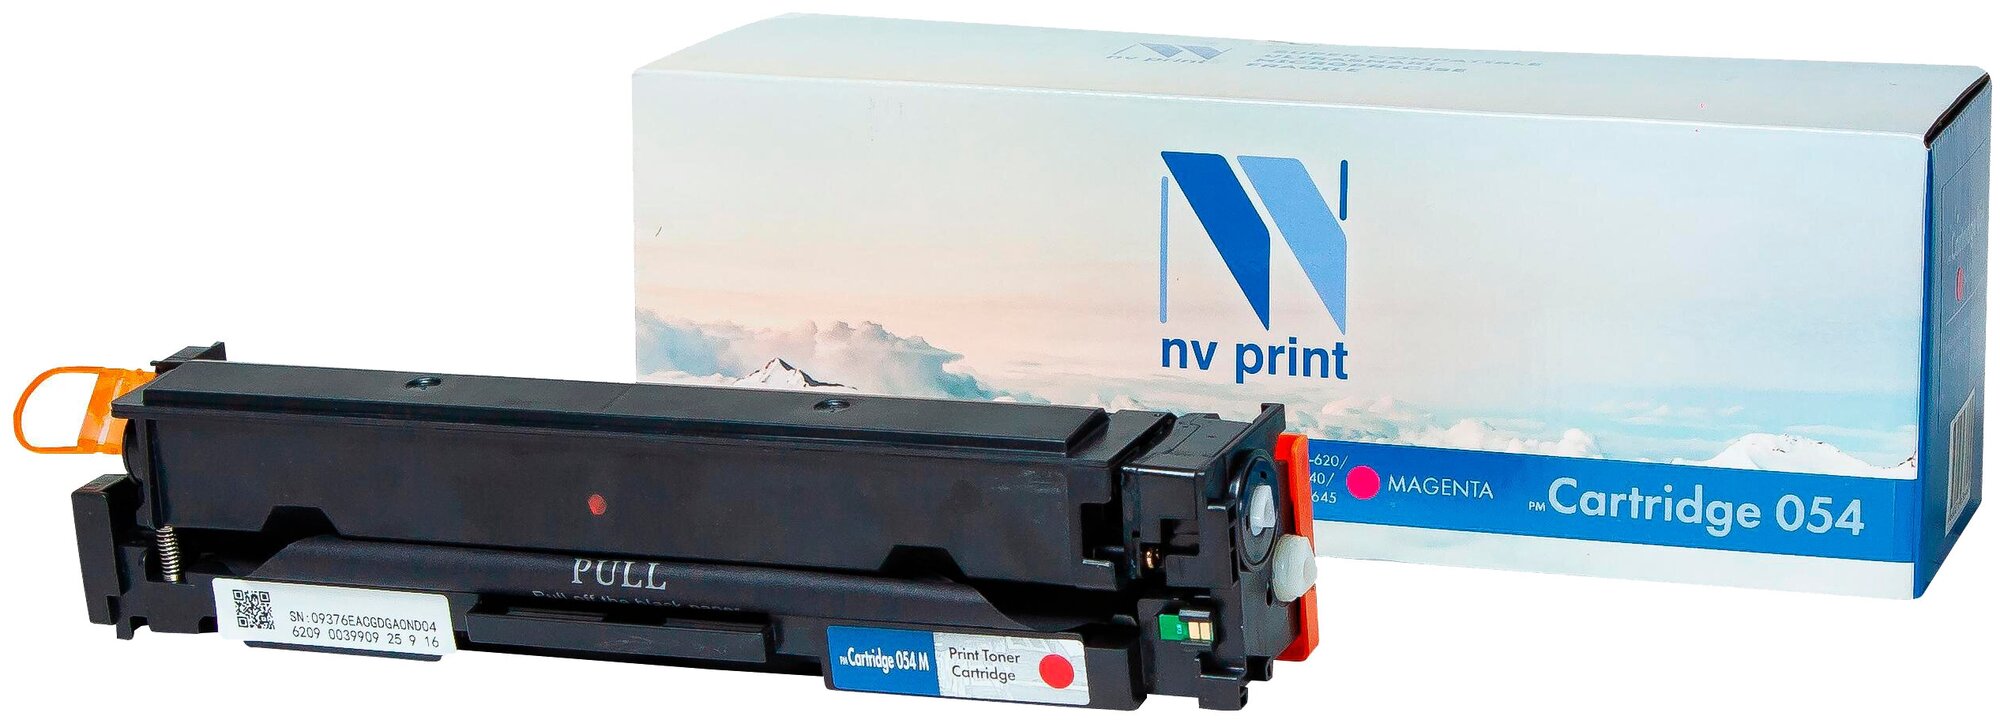 Картридж для лазерных принтеров NV PRINT для Canon LBP 621, 623, MF 641, 643, 645, пурпурный